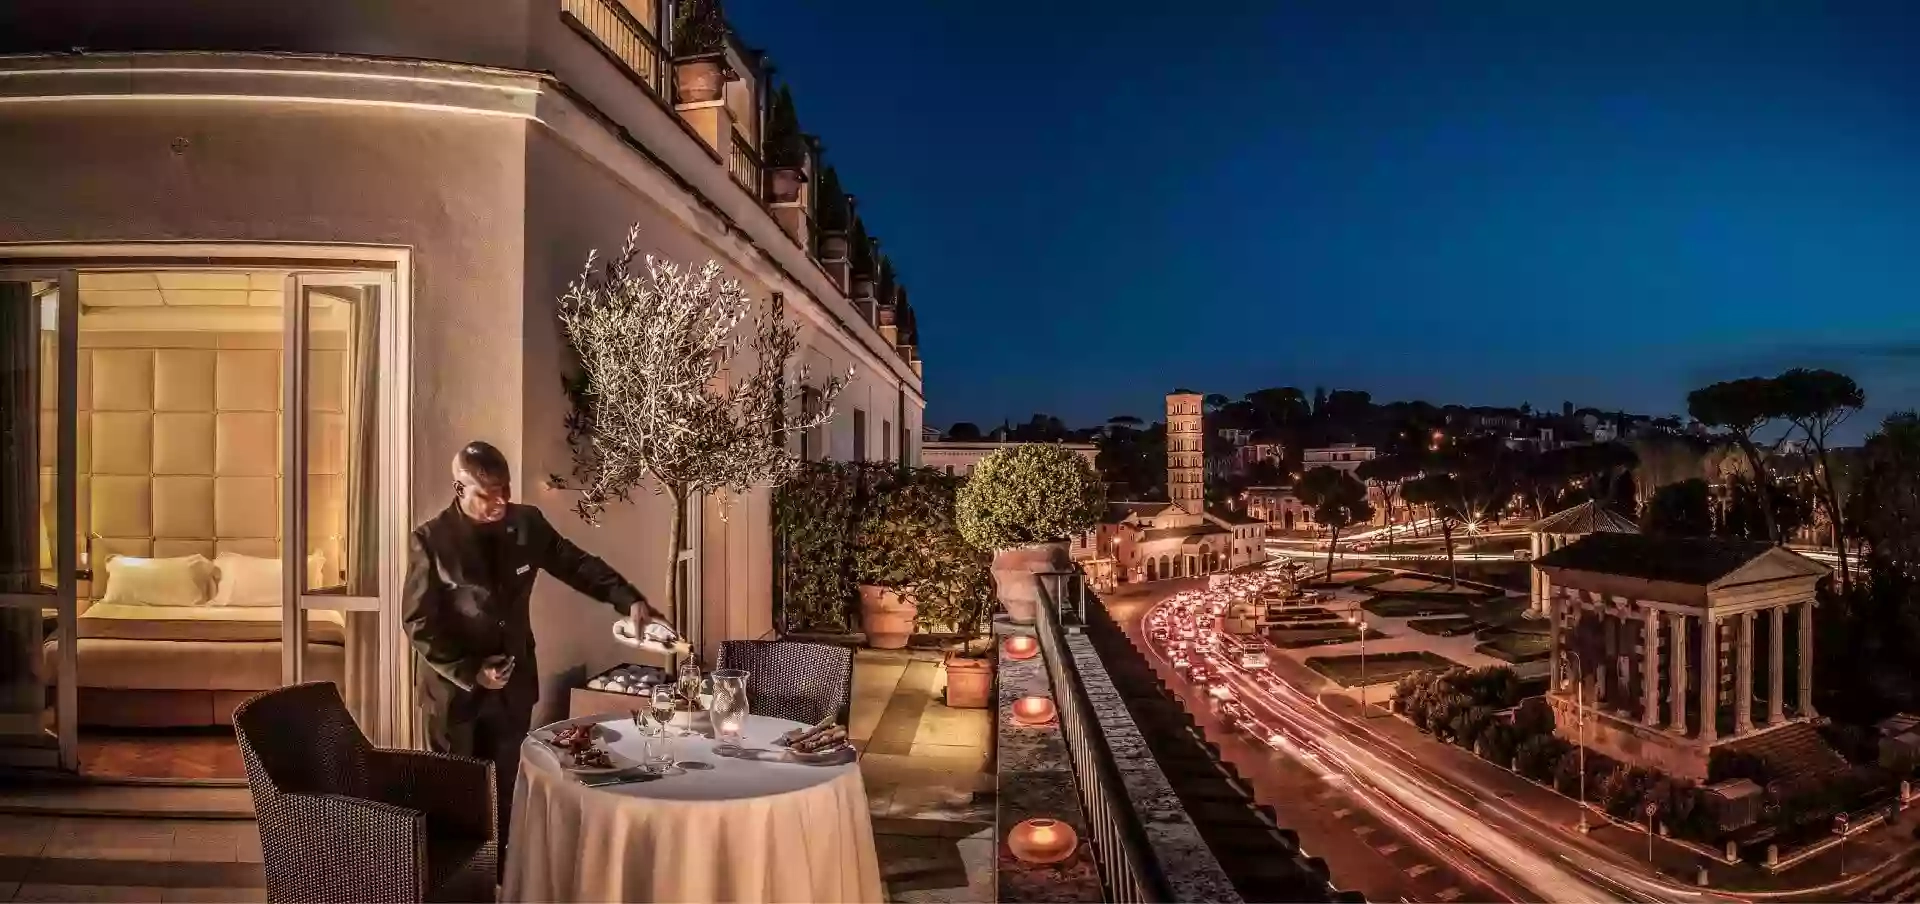 47 Boutique Hotel - Comfort, stile ed eleganza situati nel cuore di Roma